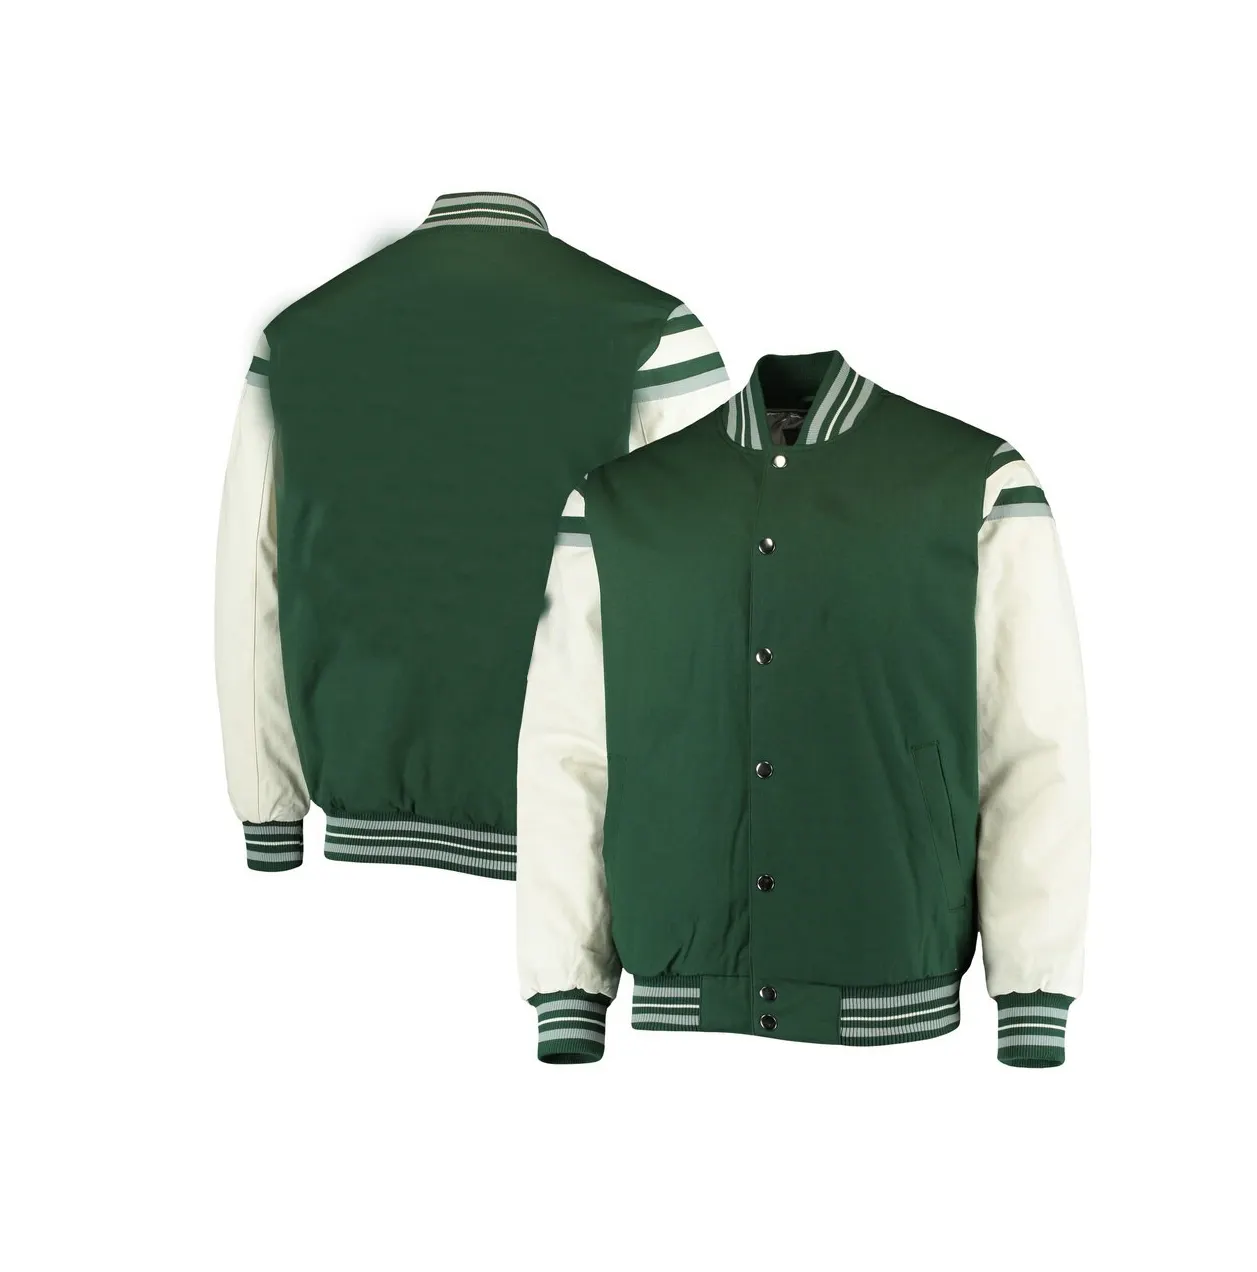 Bulk baseball varsity jacket faux leather sleeves and leather patch logo letterman jacket unisex brown varsity jacket